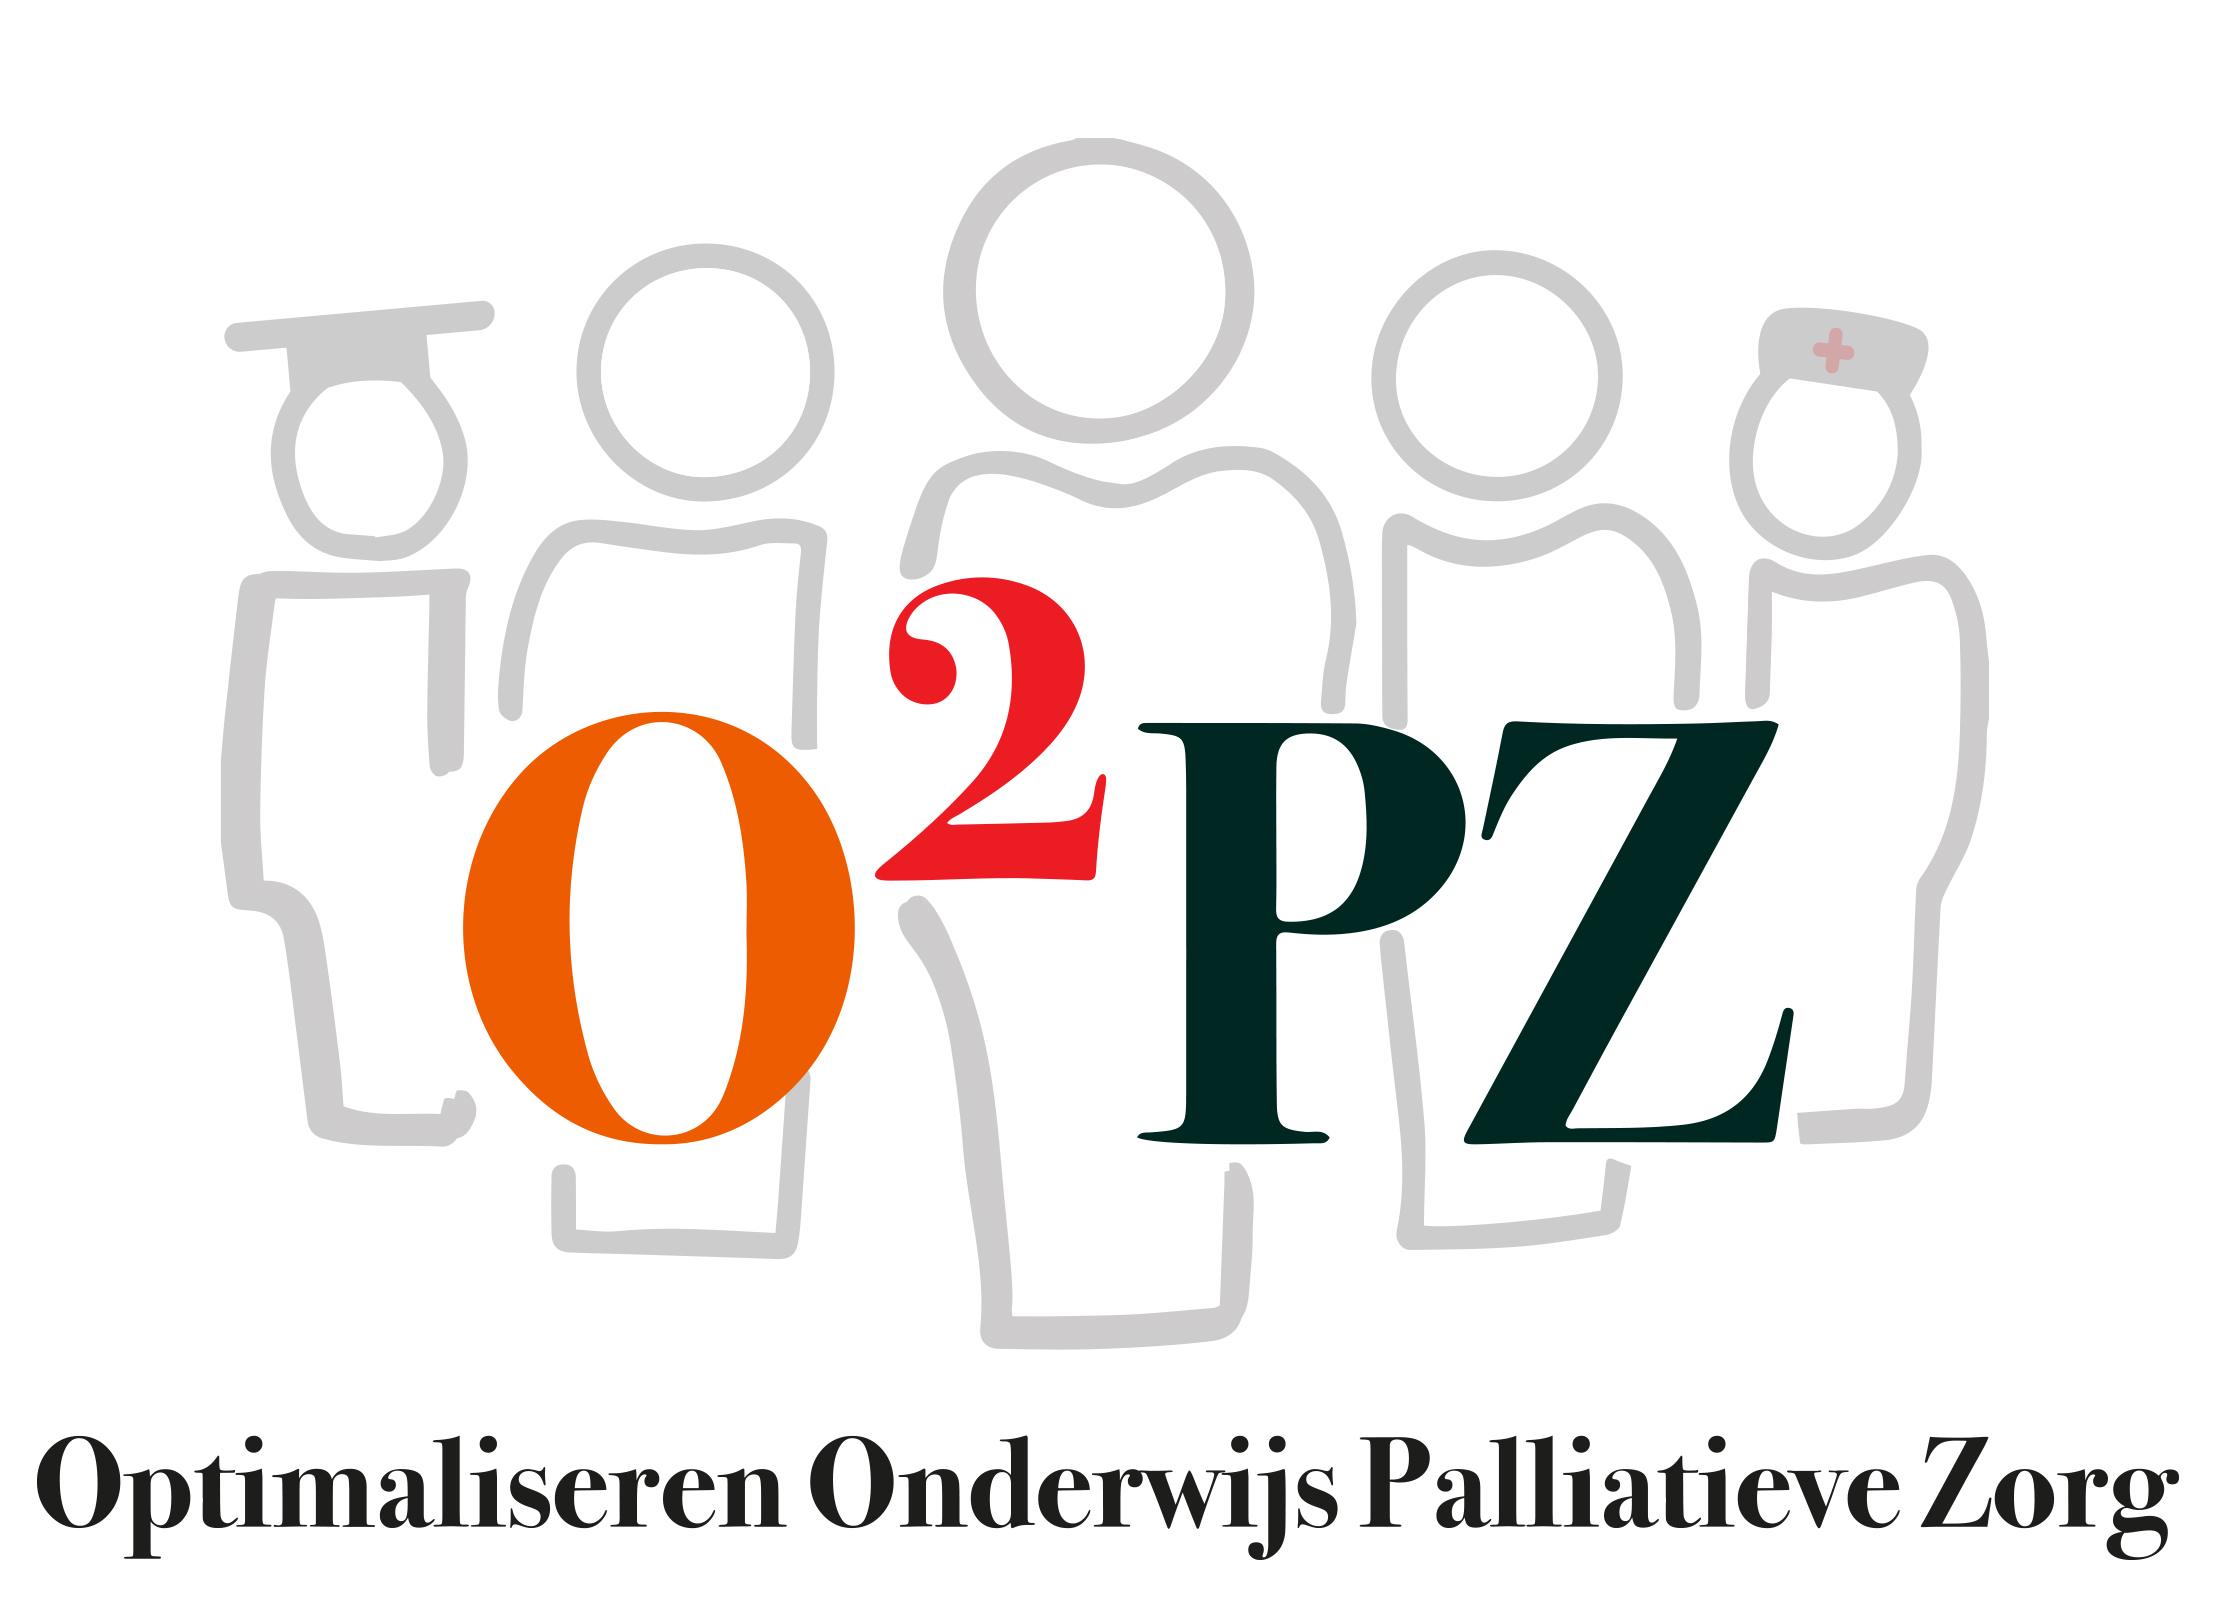 Optimaliseren Onderwijs Palliatieve Zorg logo